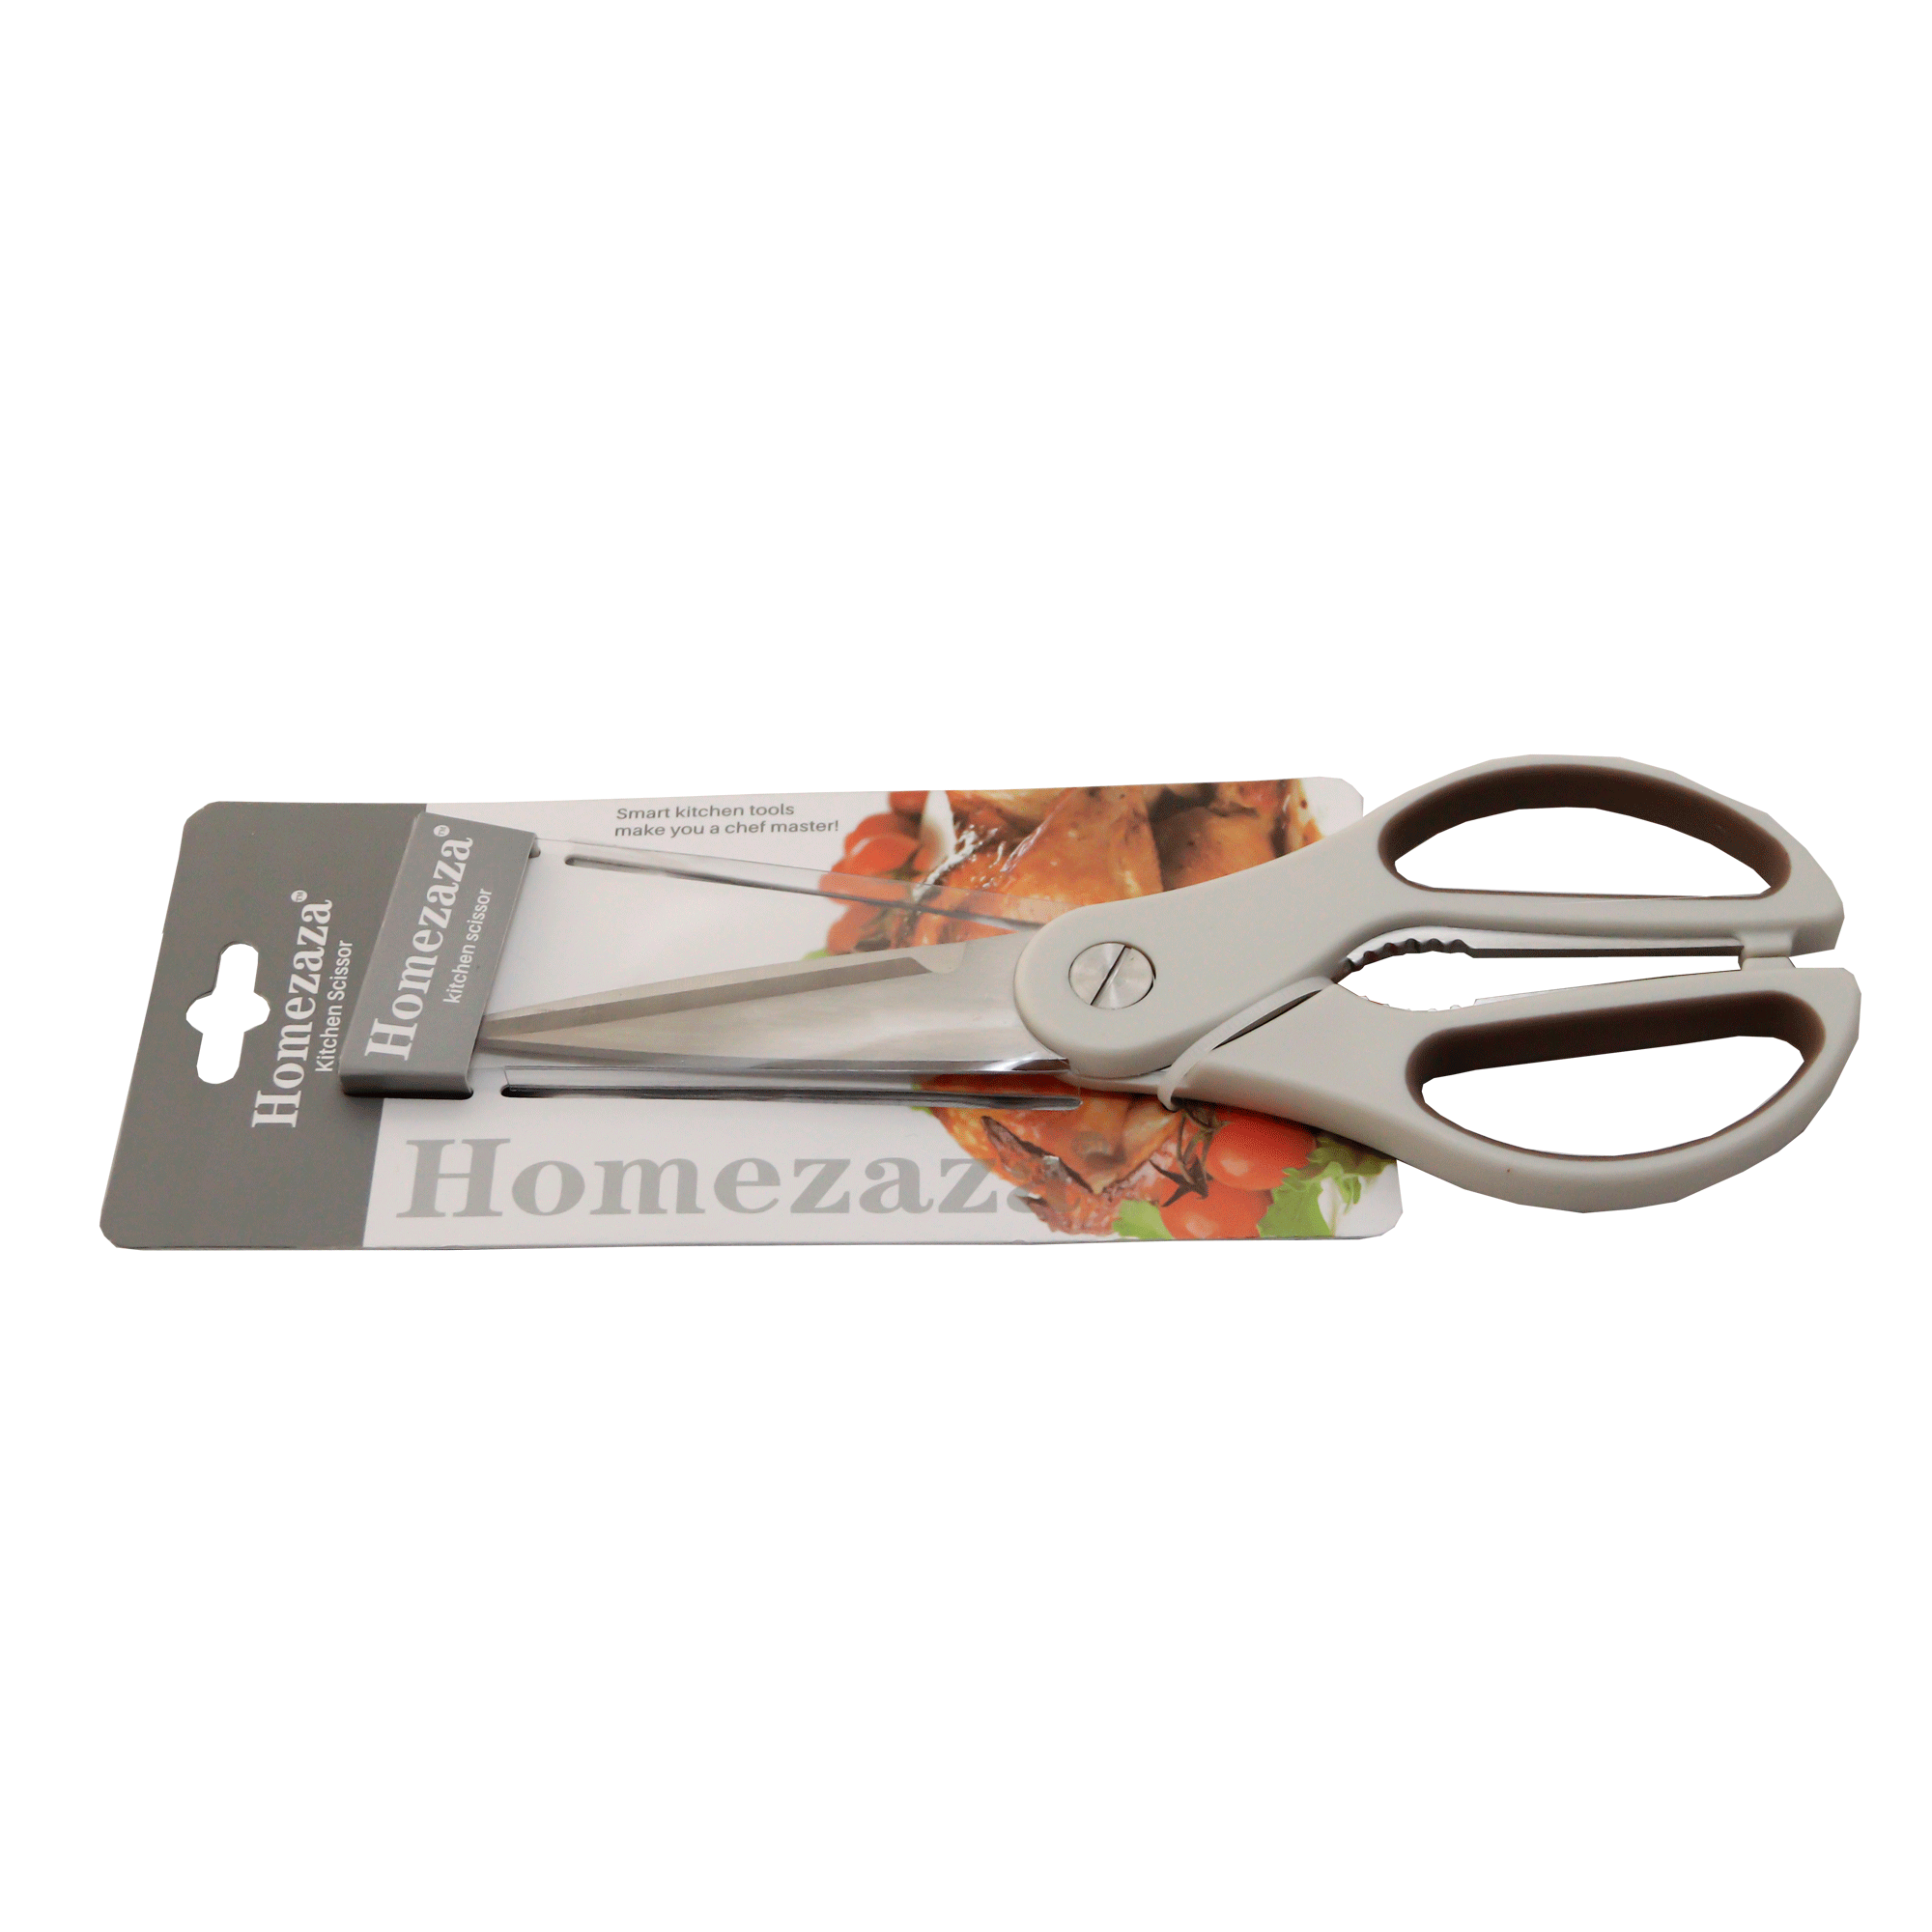 Kitchen scissors Homezaza 10-27 DH0685